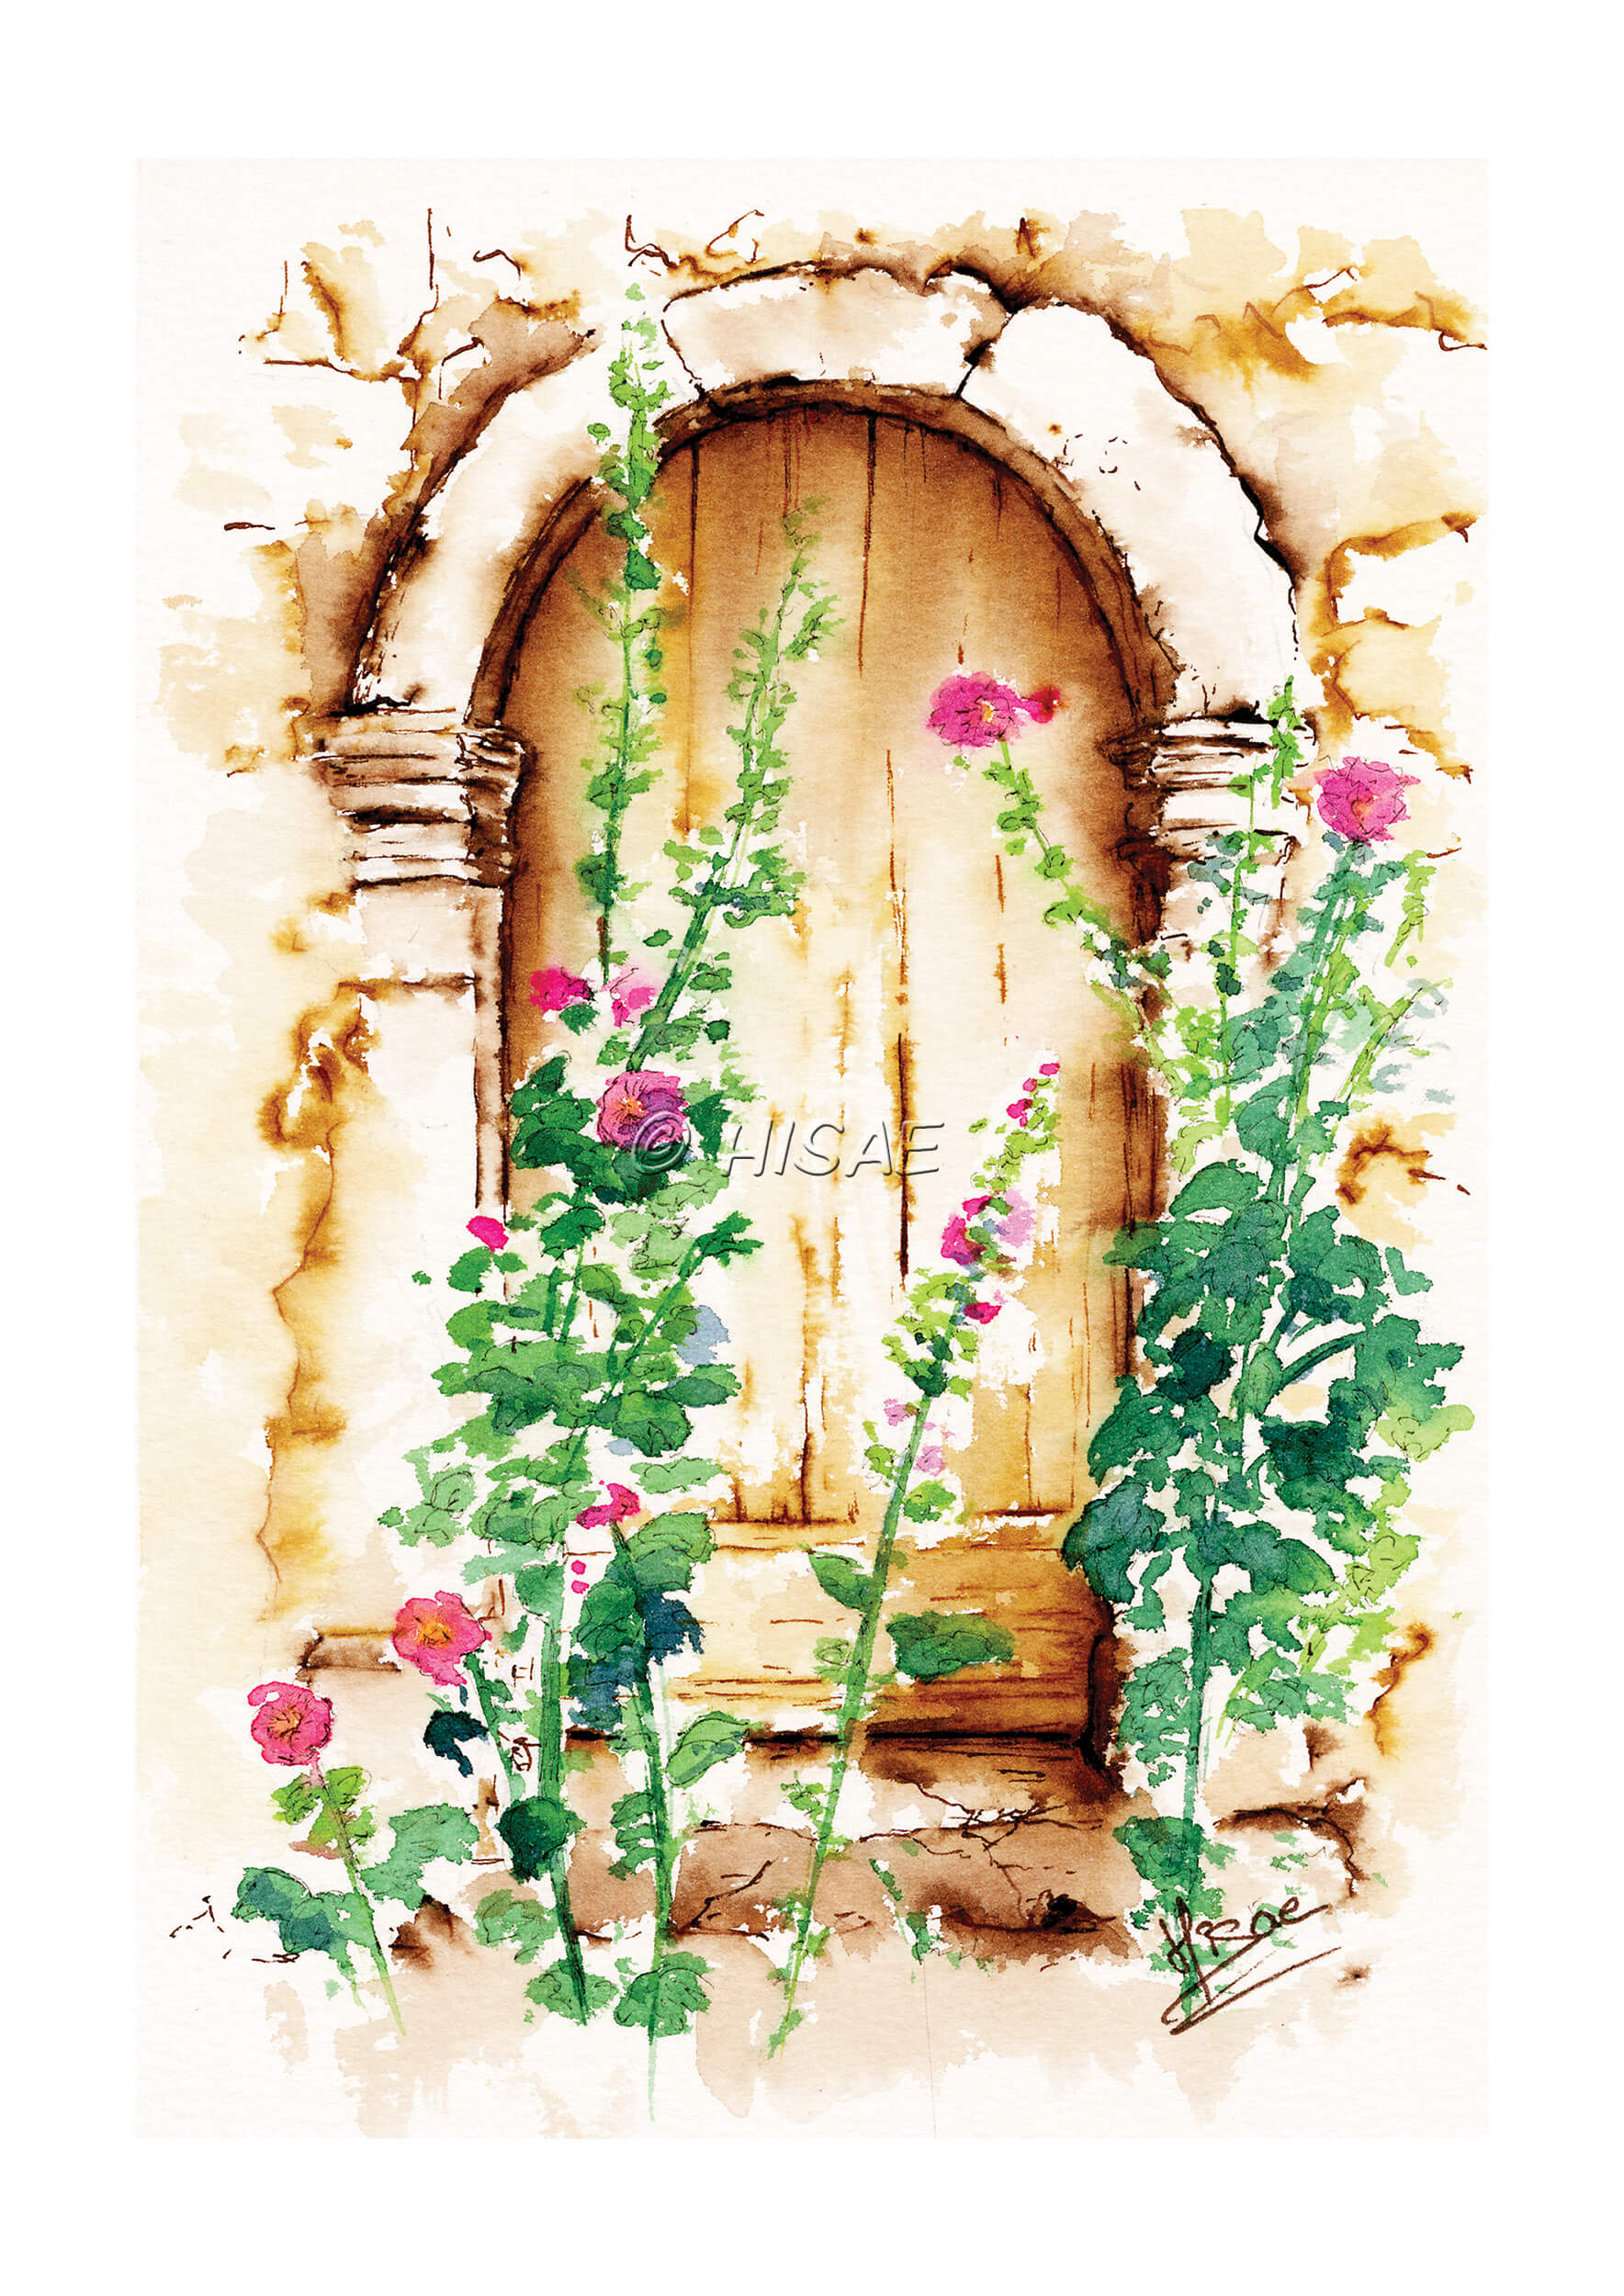 Impression d'un dessin original réalisé à l'encre et à l'aquarelle représentant une petite porte cachée derrière des roses trémières @Hisae illustrations